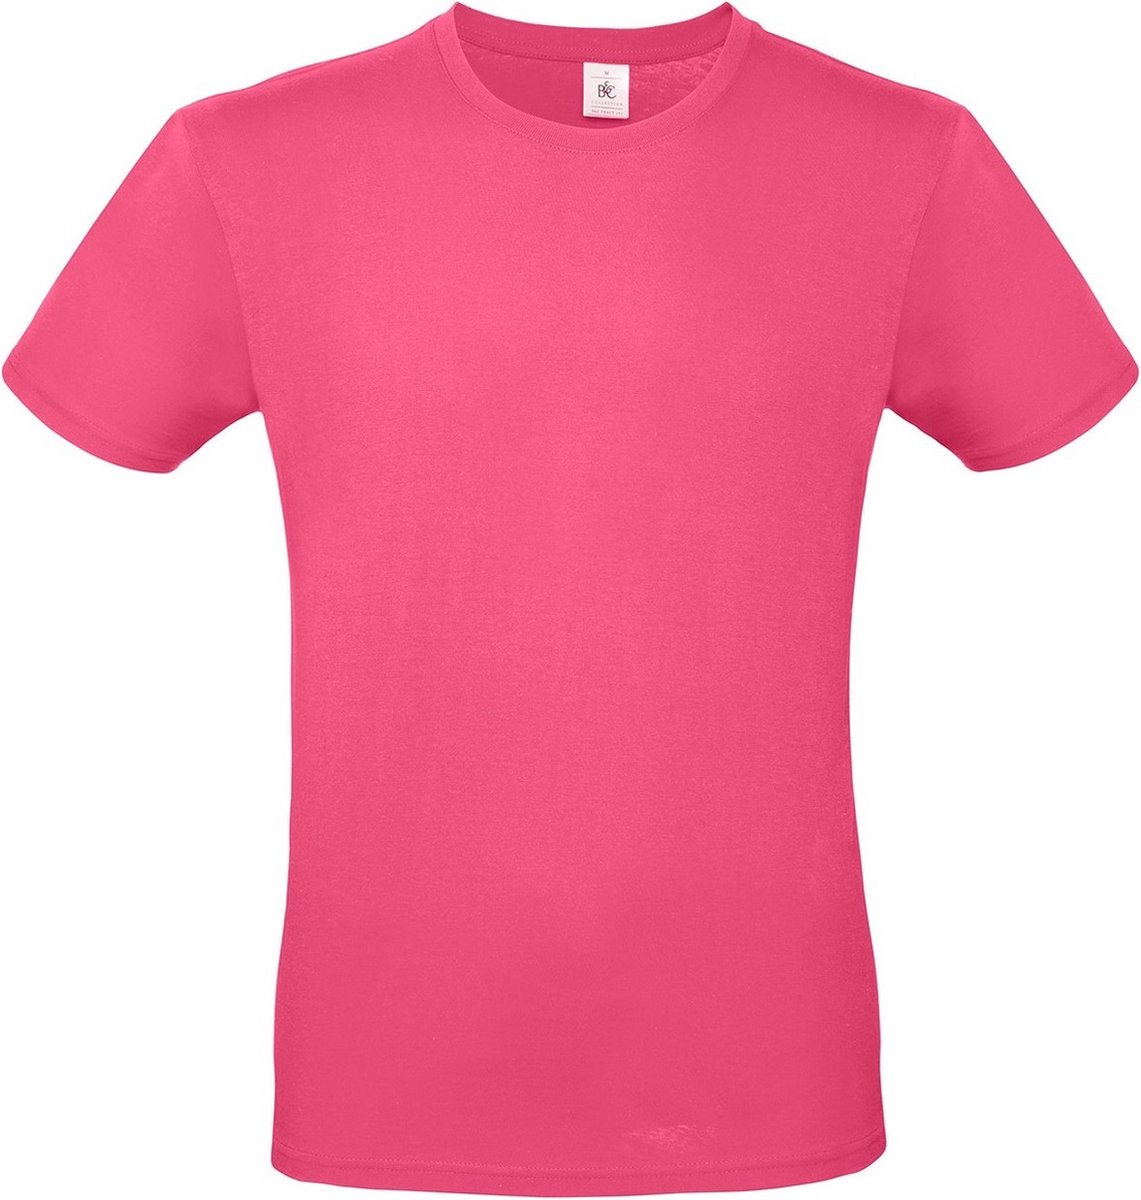 Fuchsia roze basic t-shirt met ronde hals voor heren - katoen - 145 grams - shirts / kleding 2XL (56)